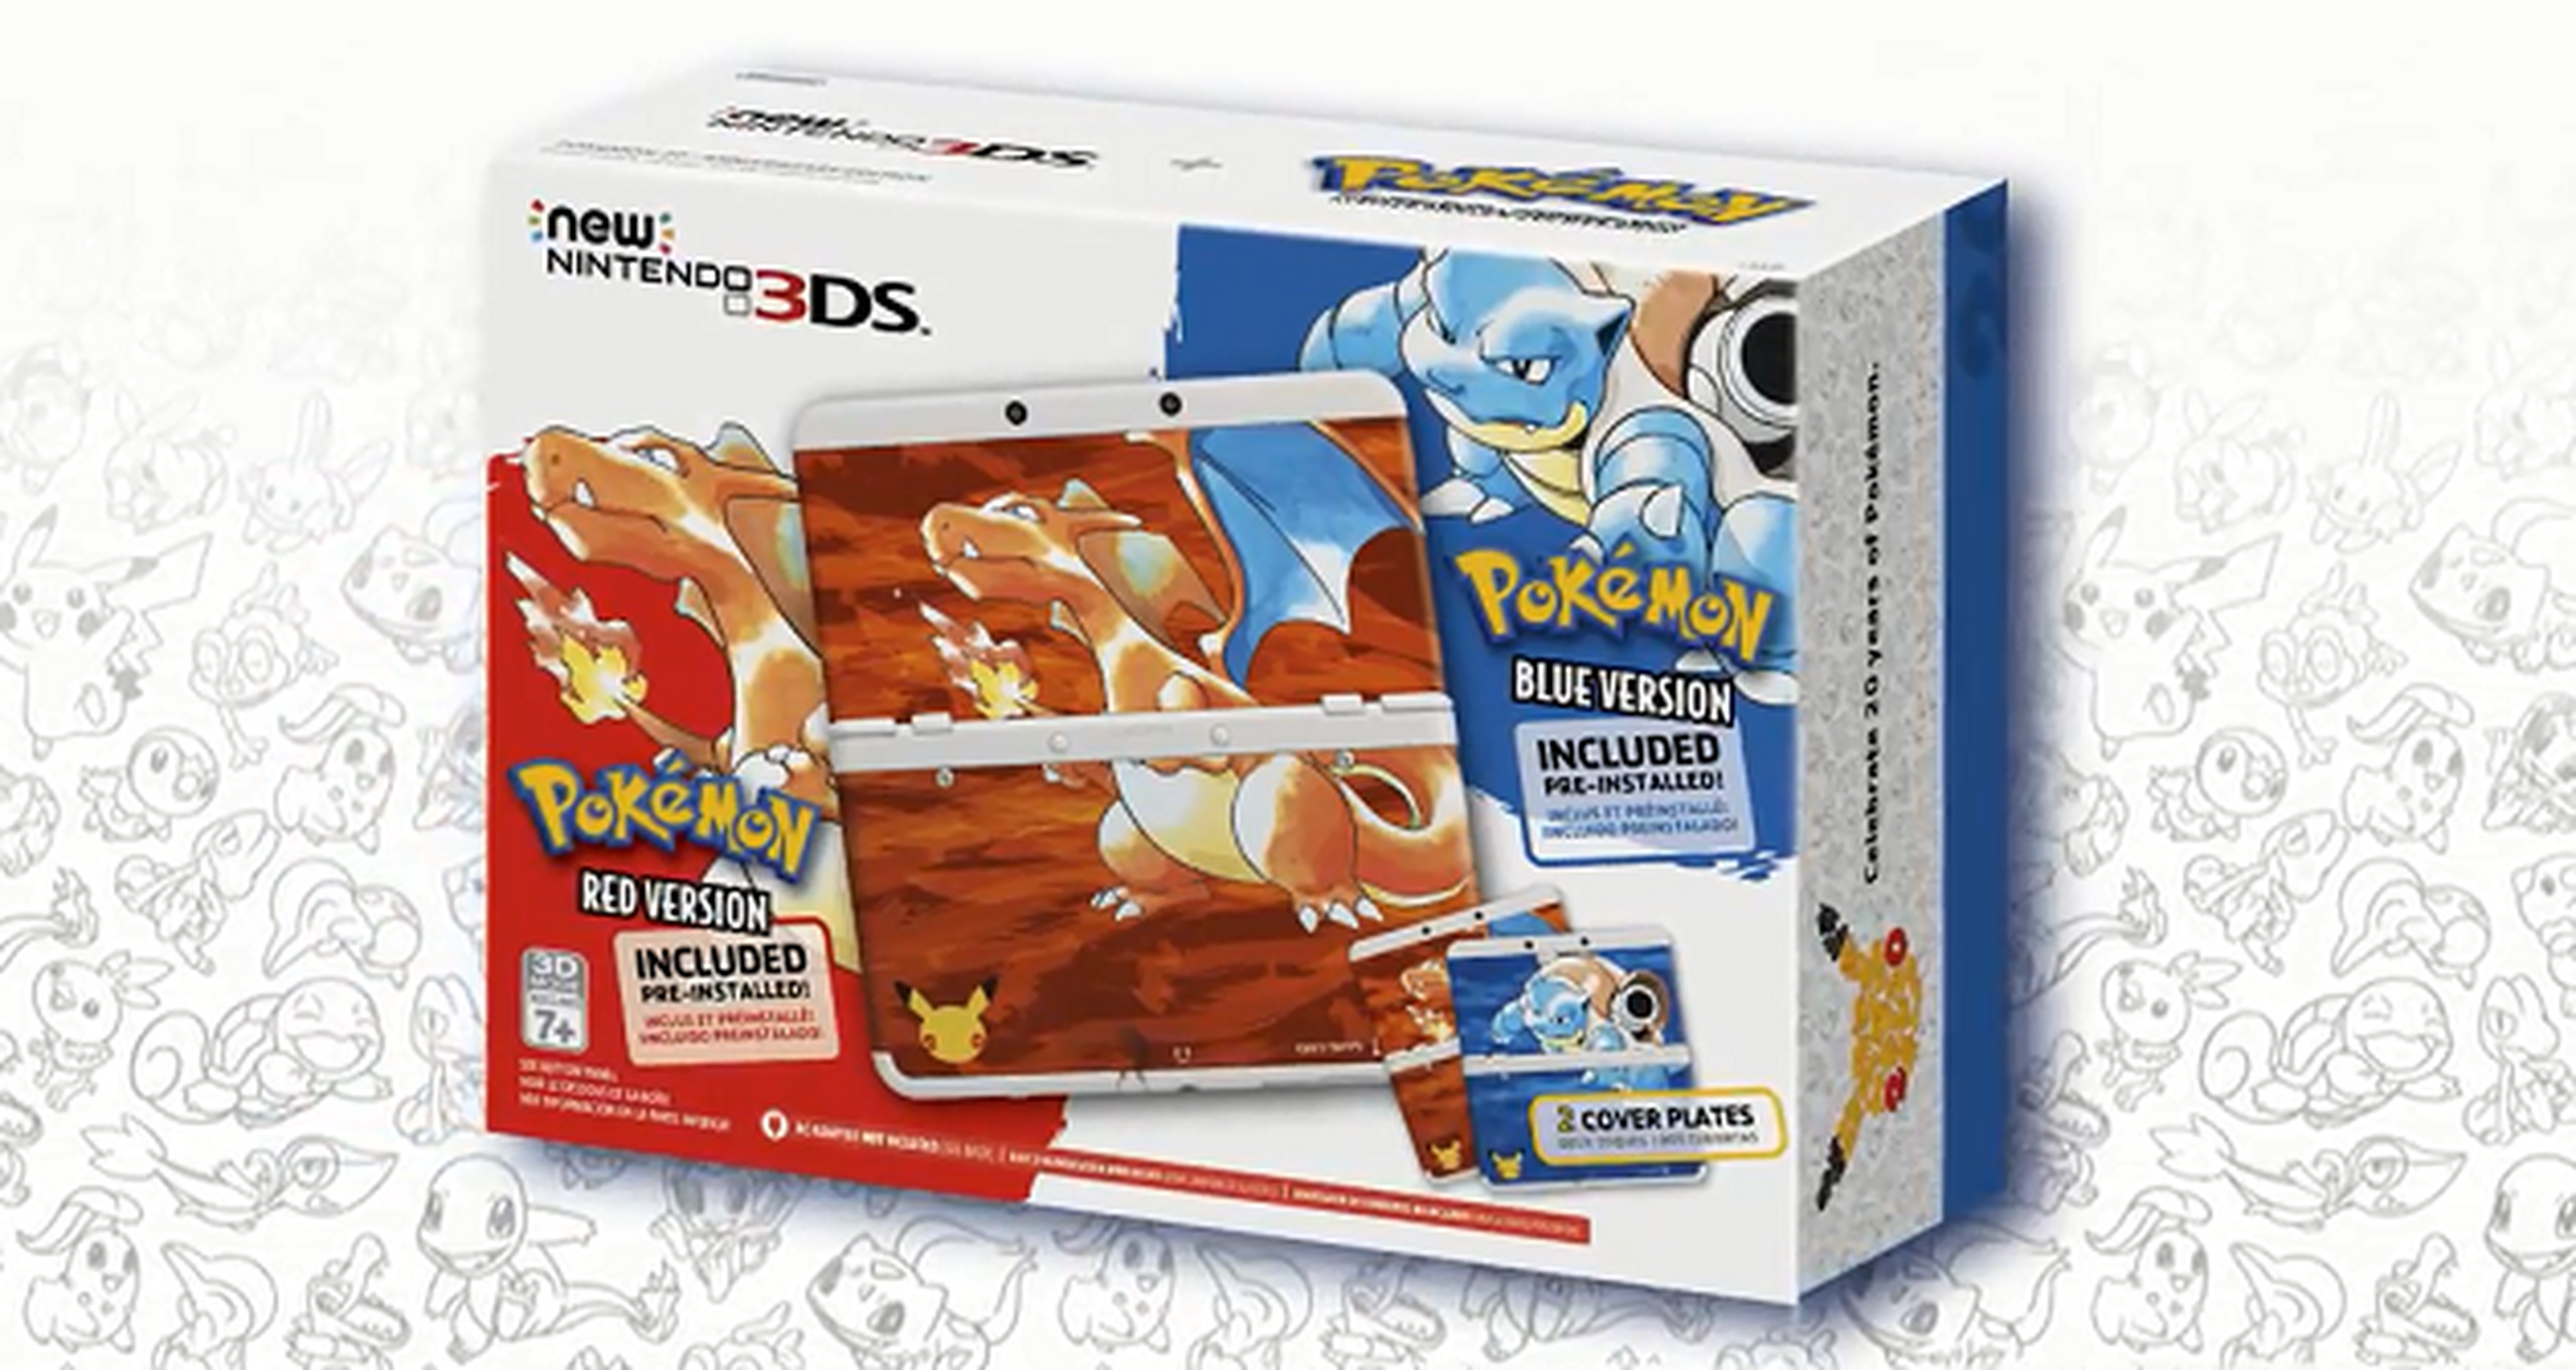 New Nintendo 3DS Edición Especial Pokémon Rojo y Azul anunciada